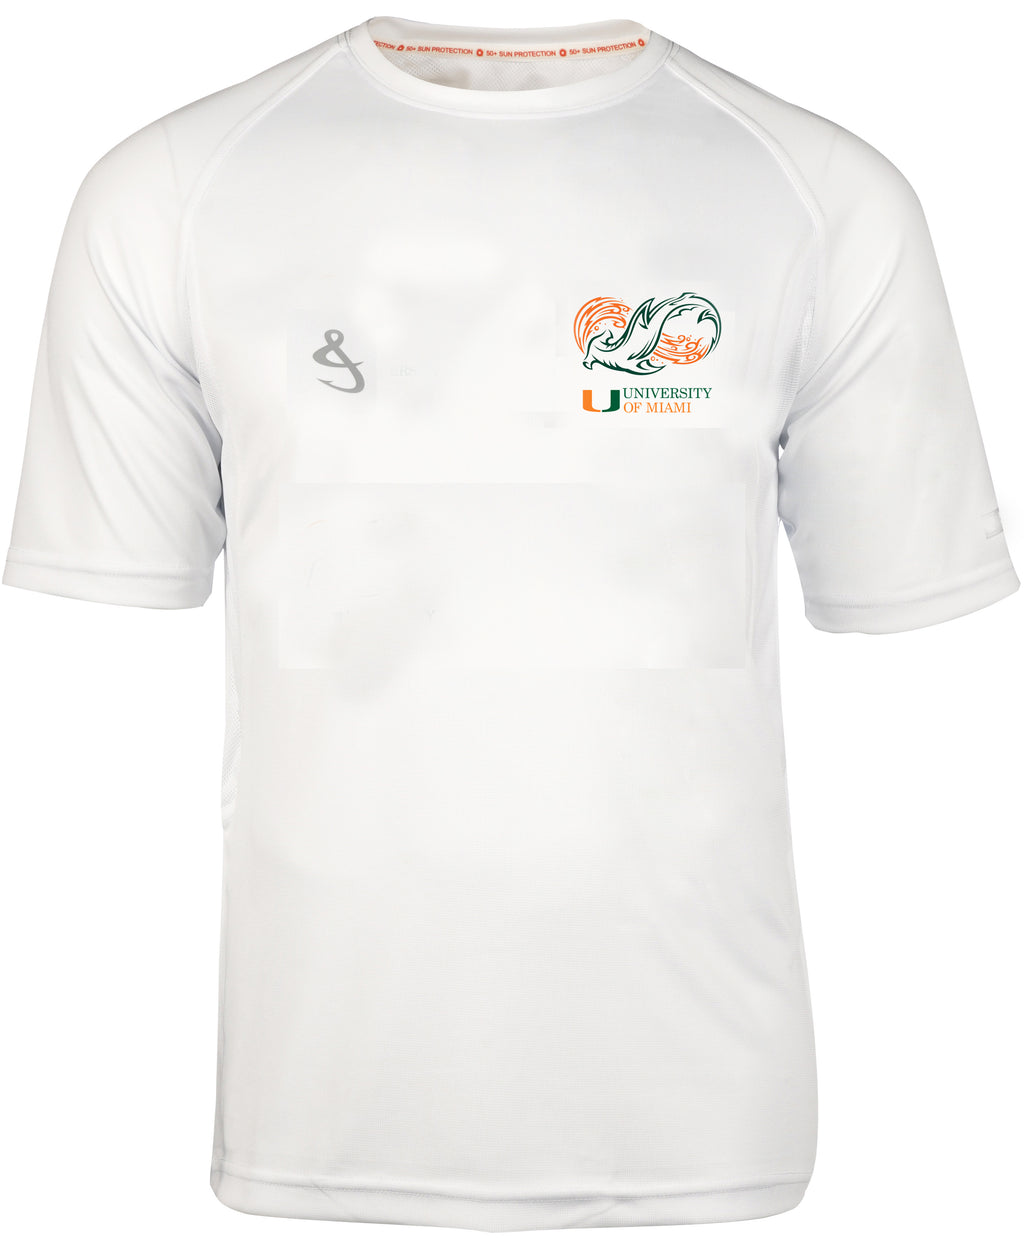 university of miami fishing shirt